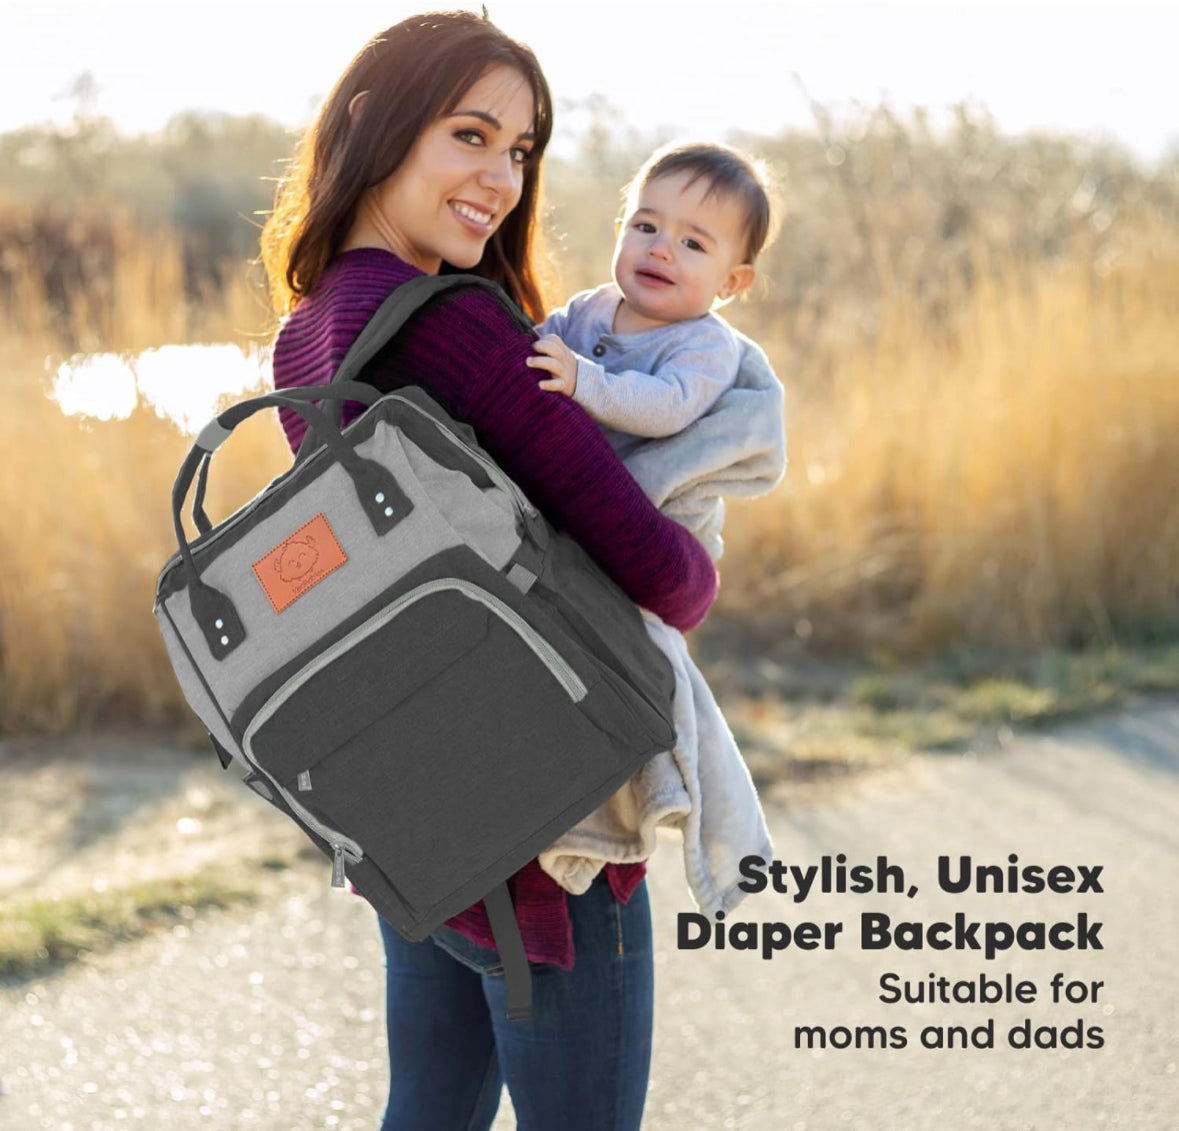 KeaBabies Diaper Bag Backpack, Waterproof Multi Function Baby Travel Bags.